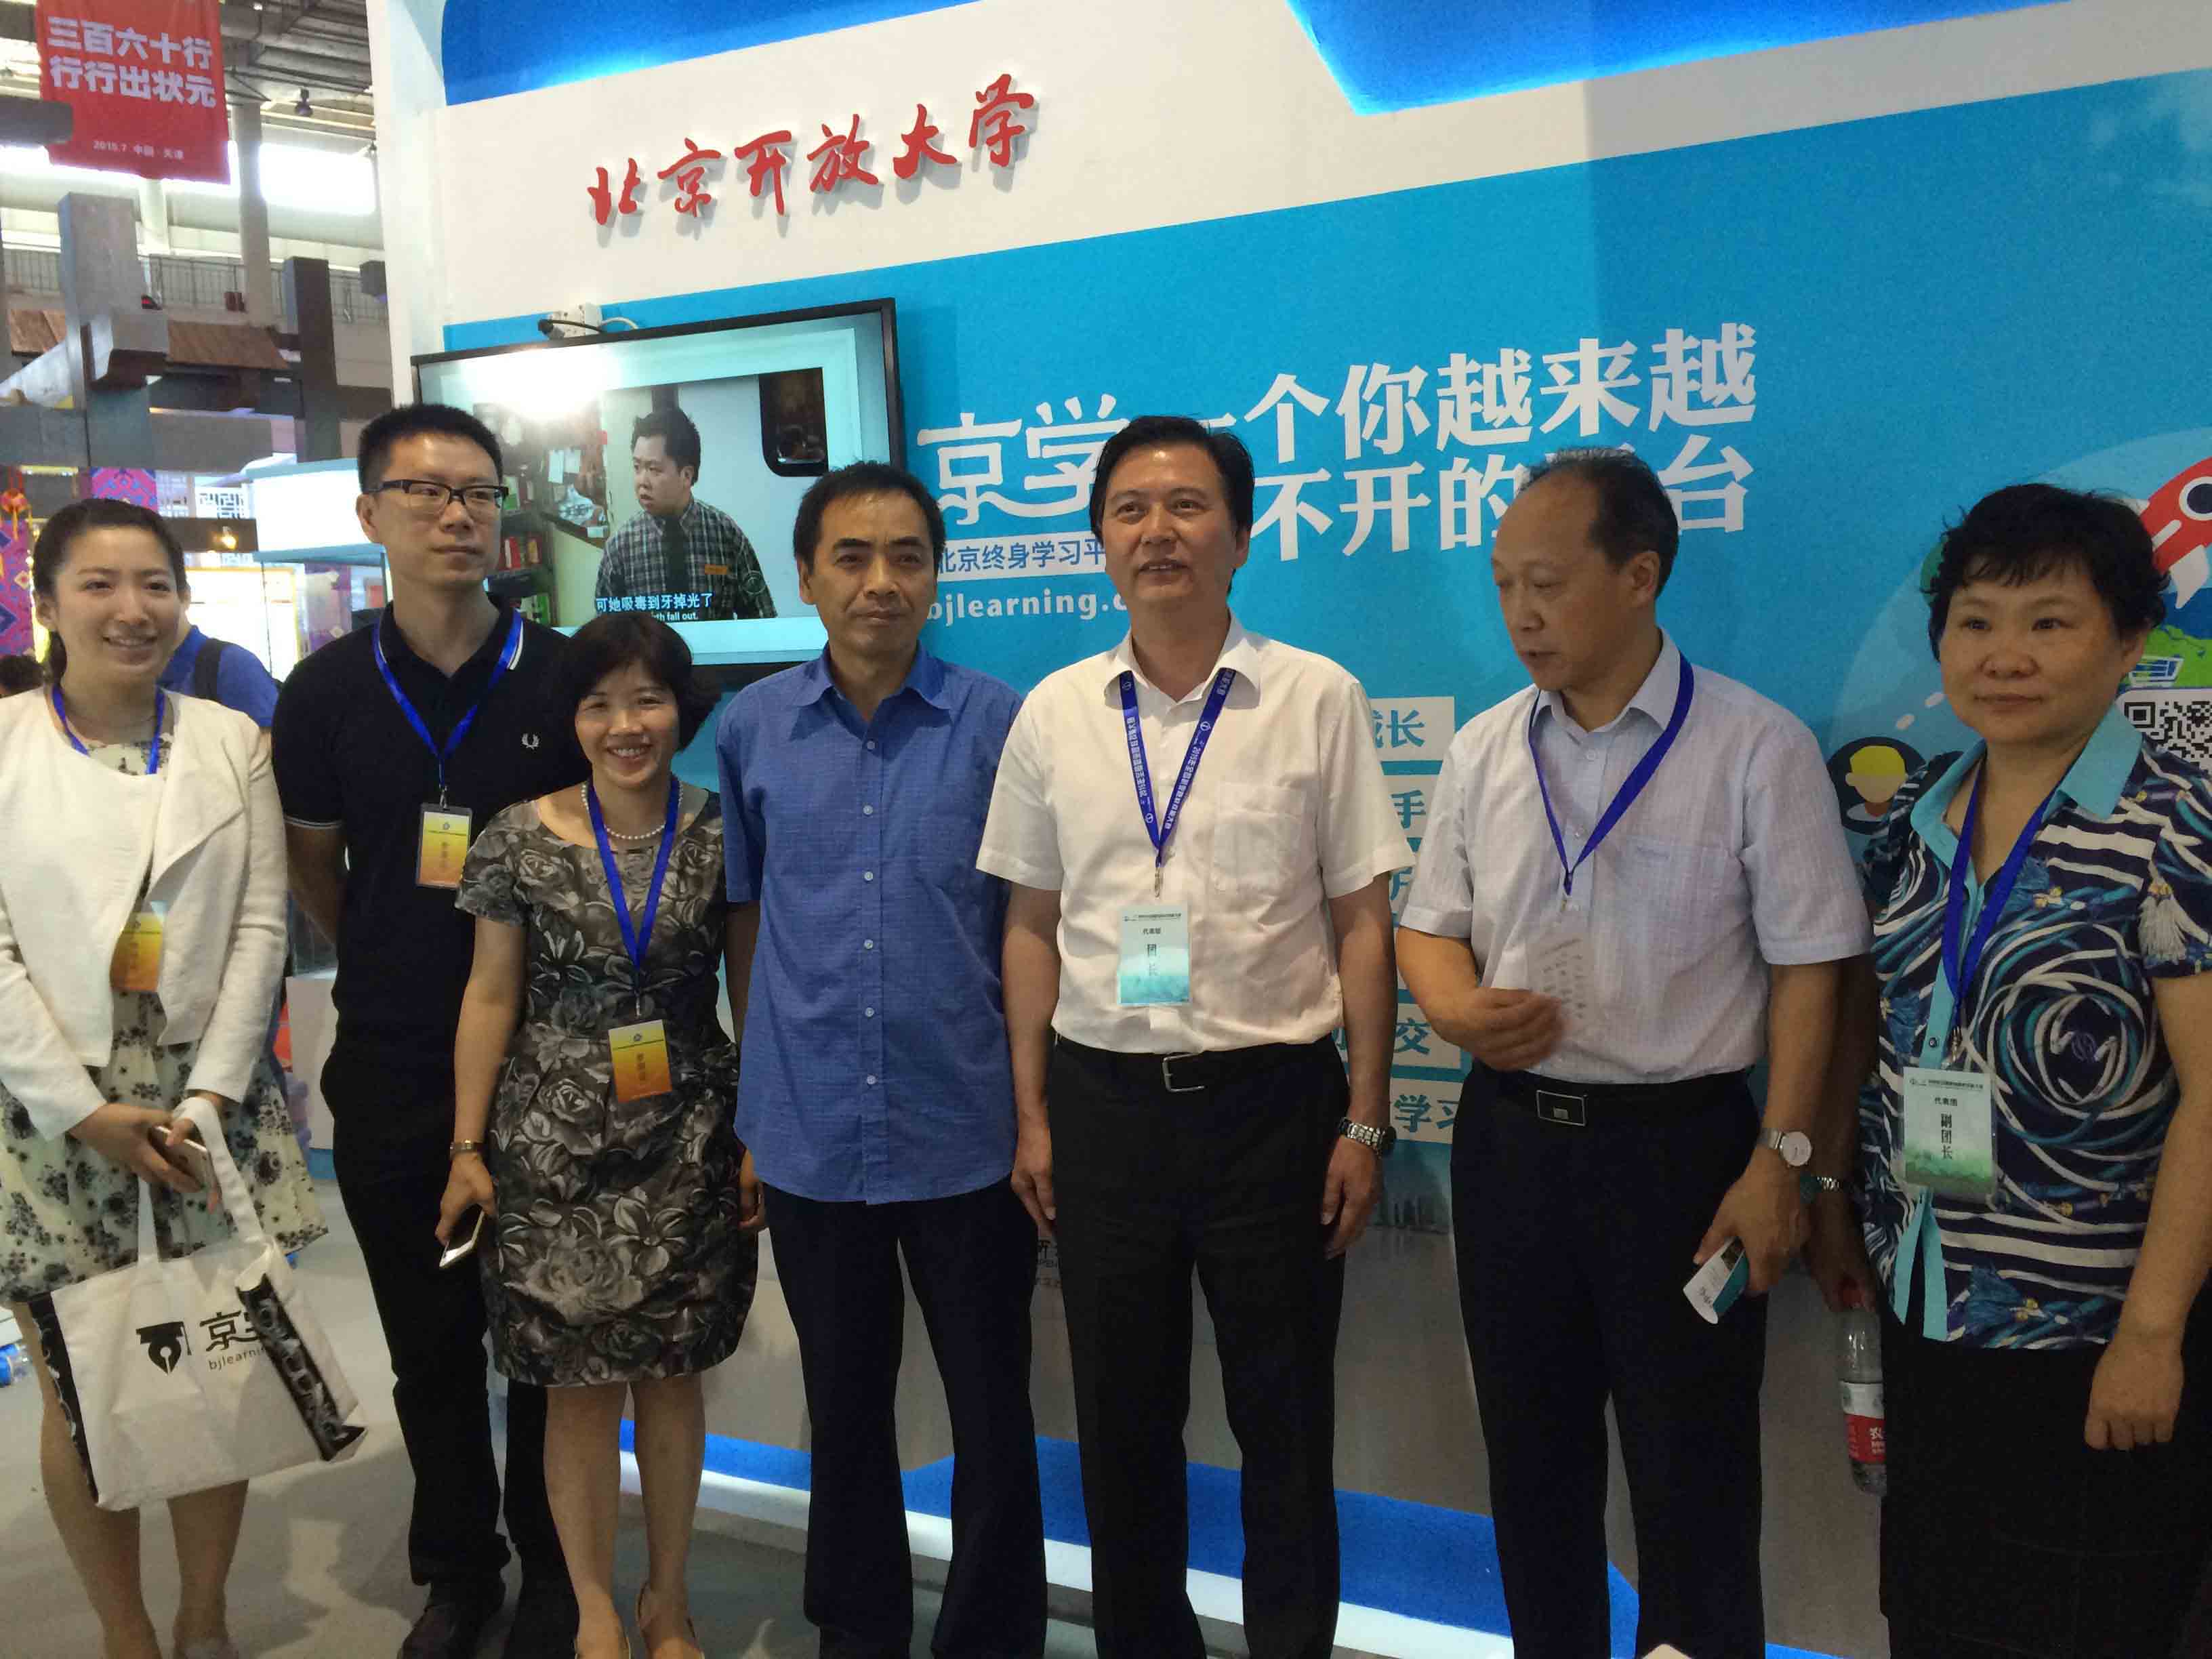 2015年“京学网”作为北京开放大学的品牌之一参加天津展会